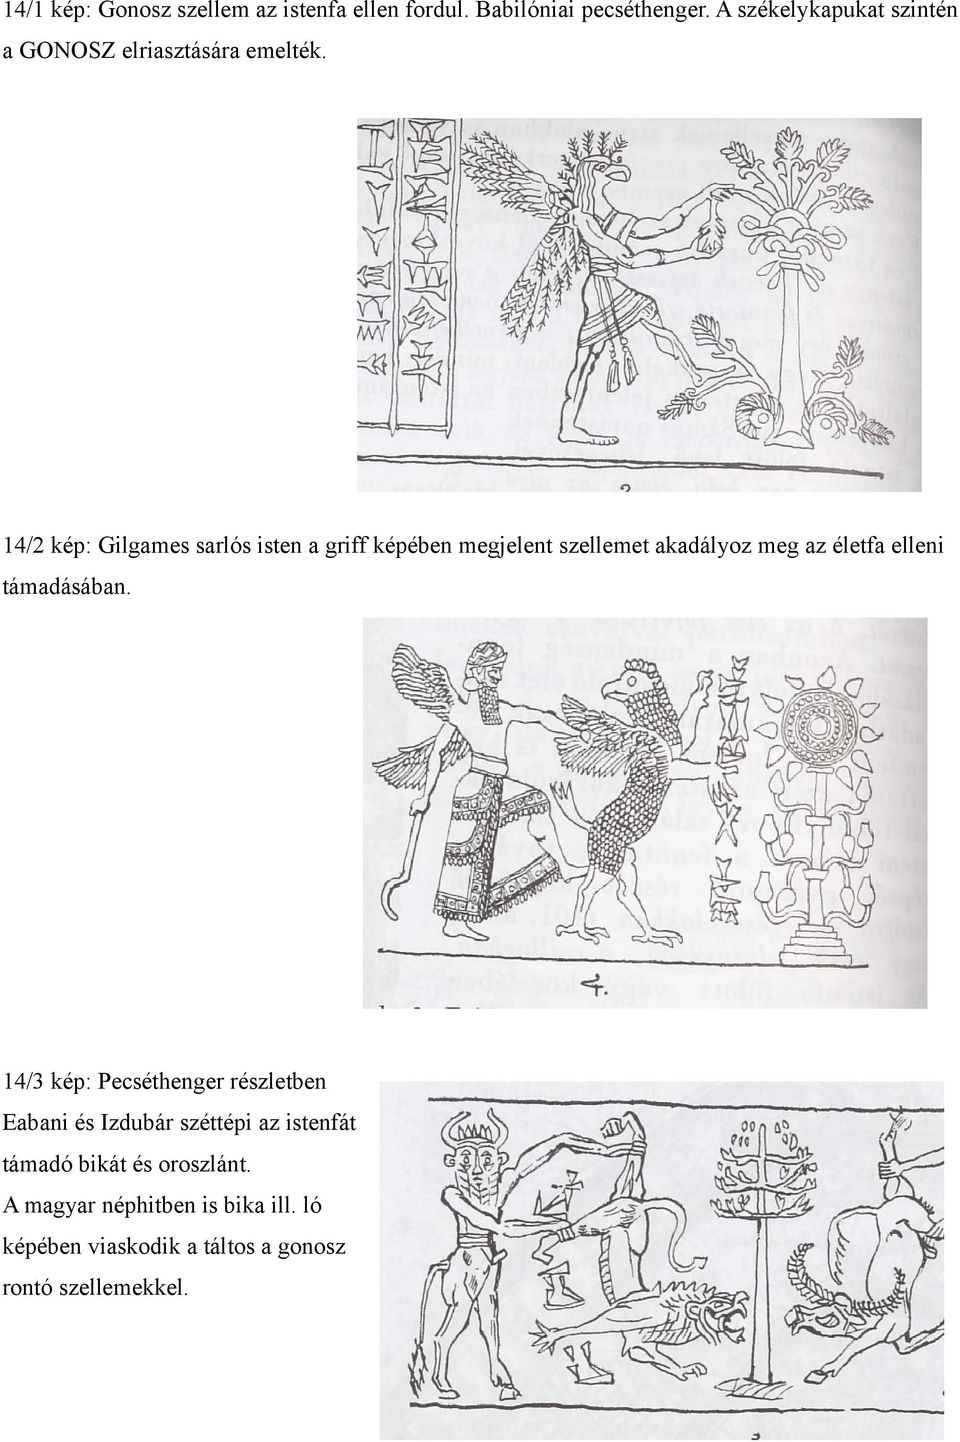 14/2 kép: Gilgames sarlós isten a griff képében megjelent szellemet akadályoz meg az életfa elleni